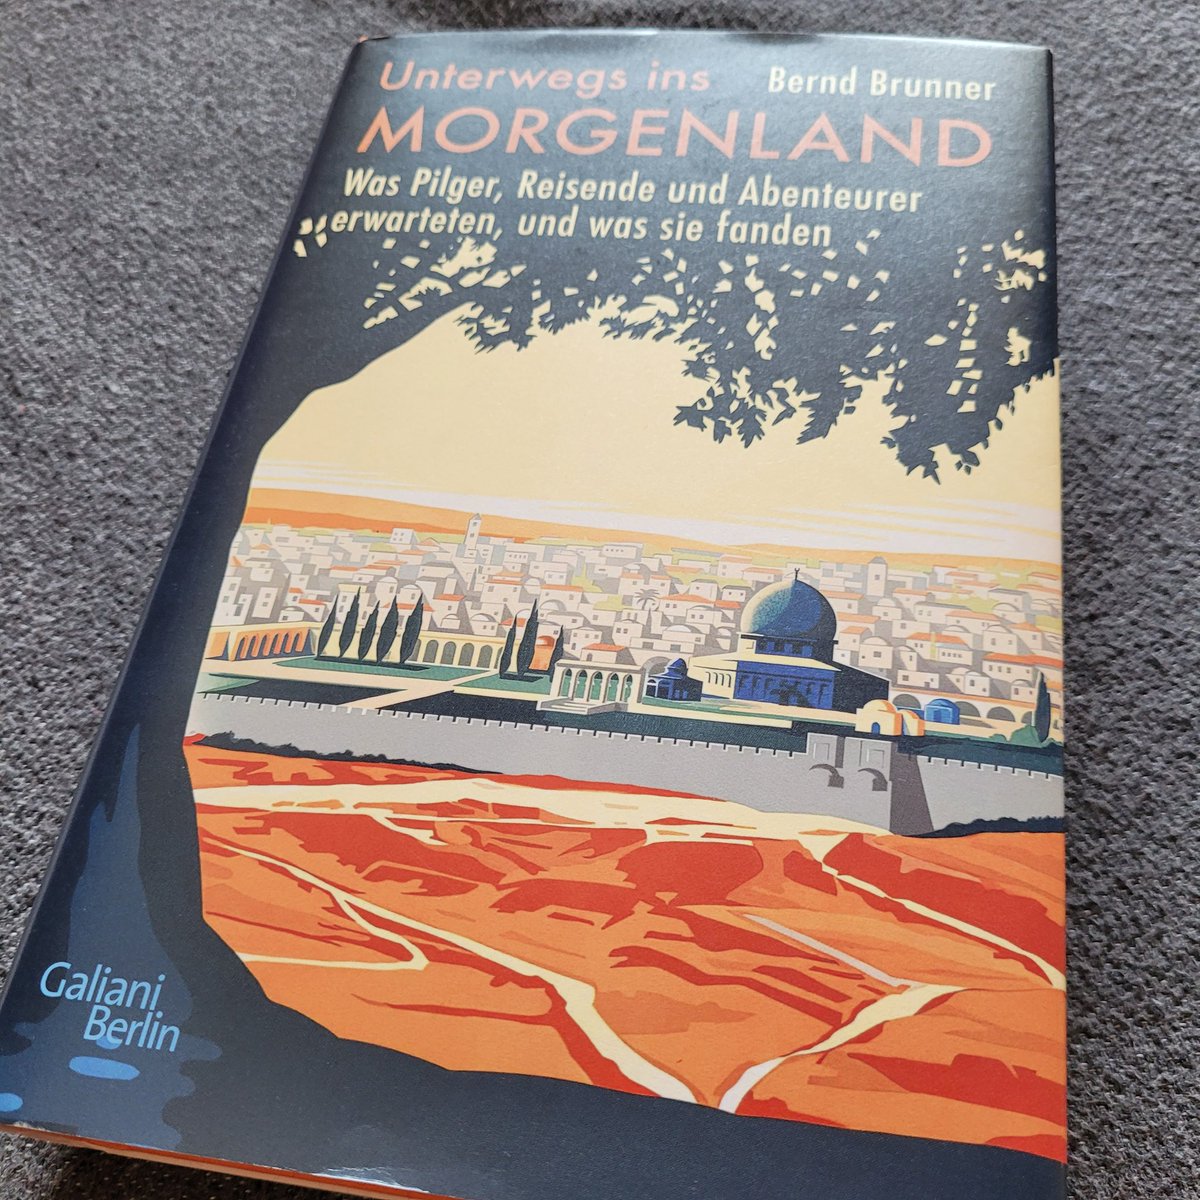 Ich freue mich über den Gewinn und auf die Lektüre von 'Unterwegs ins Morgenland' Von Bernd Brunner @arasrandevu Vielen Dank.